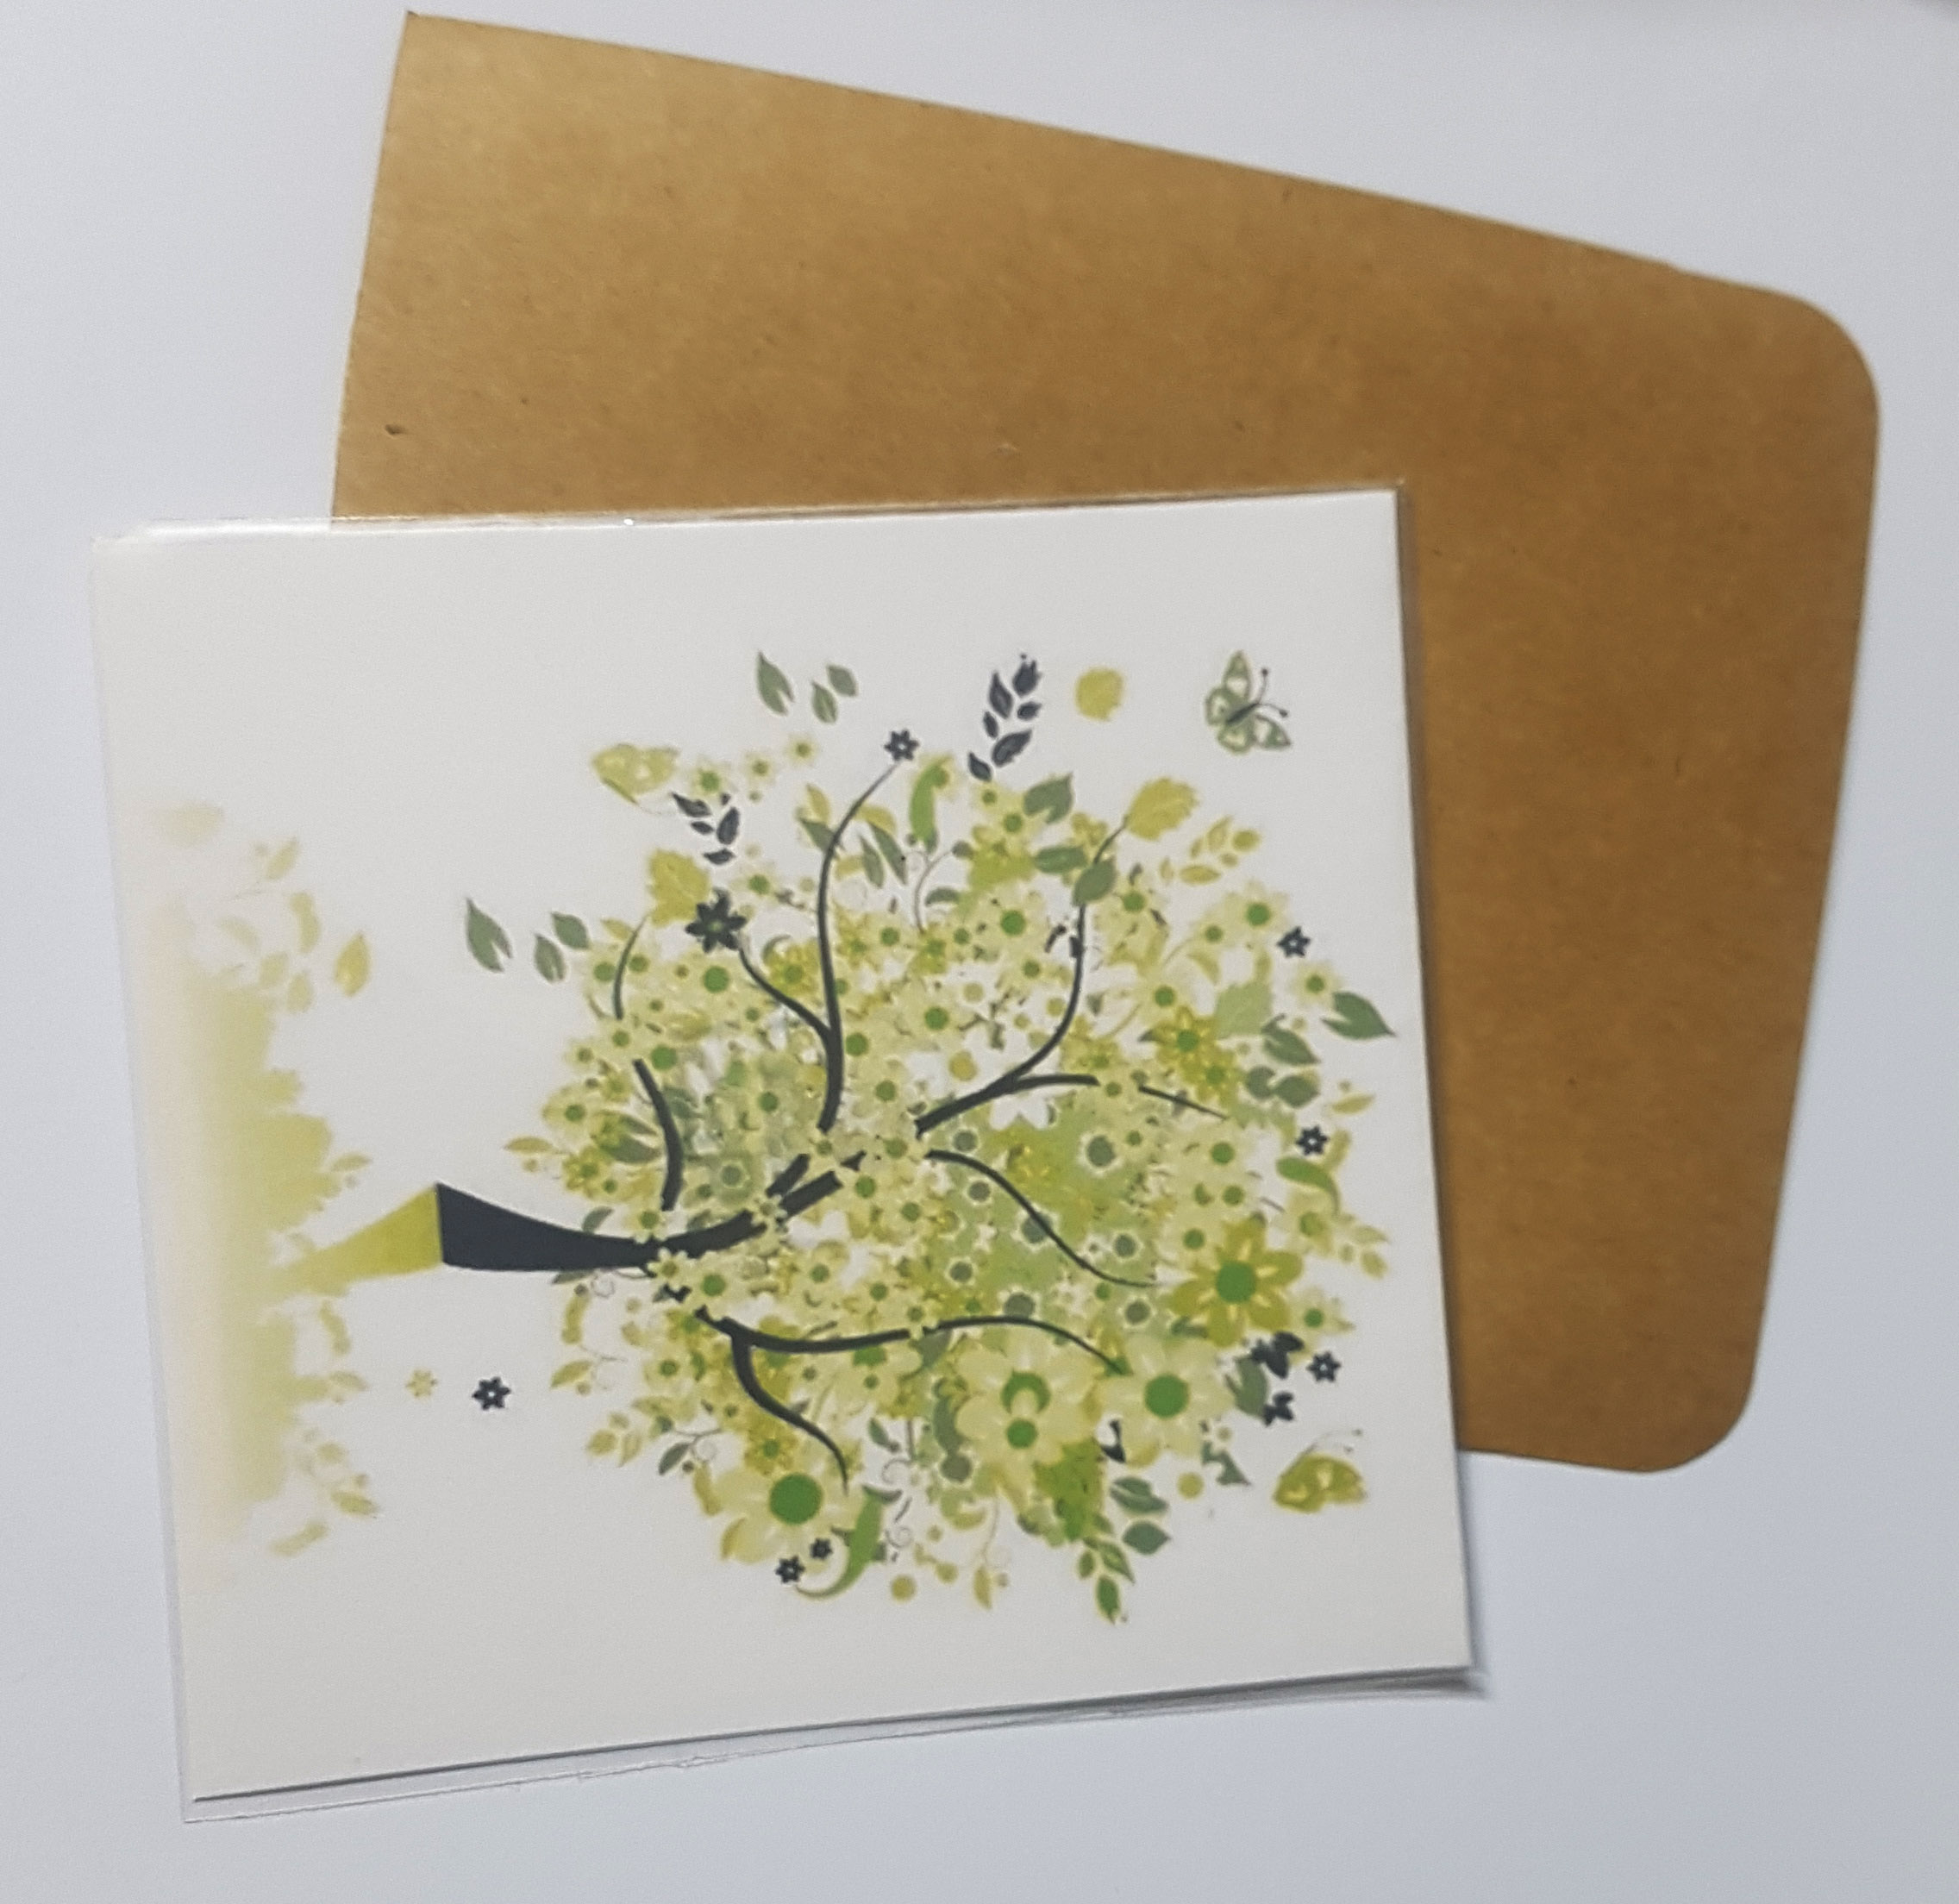 Thiệp in hình cây phong cách làm card quà cám ơn ,chúc mừng sinh nhật và giử tặng người thân yêu